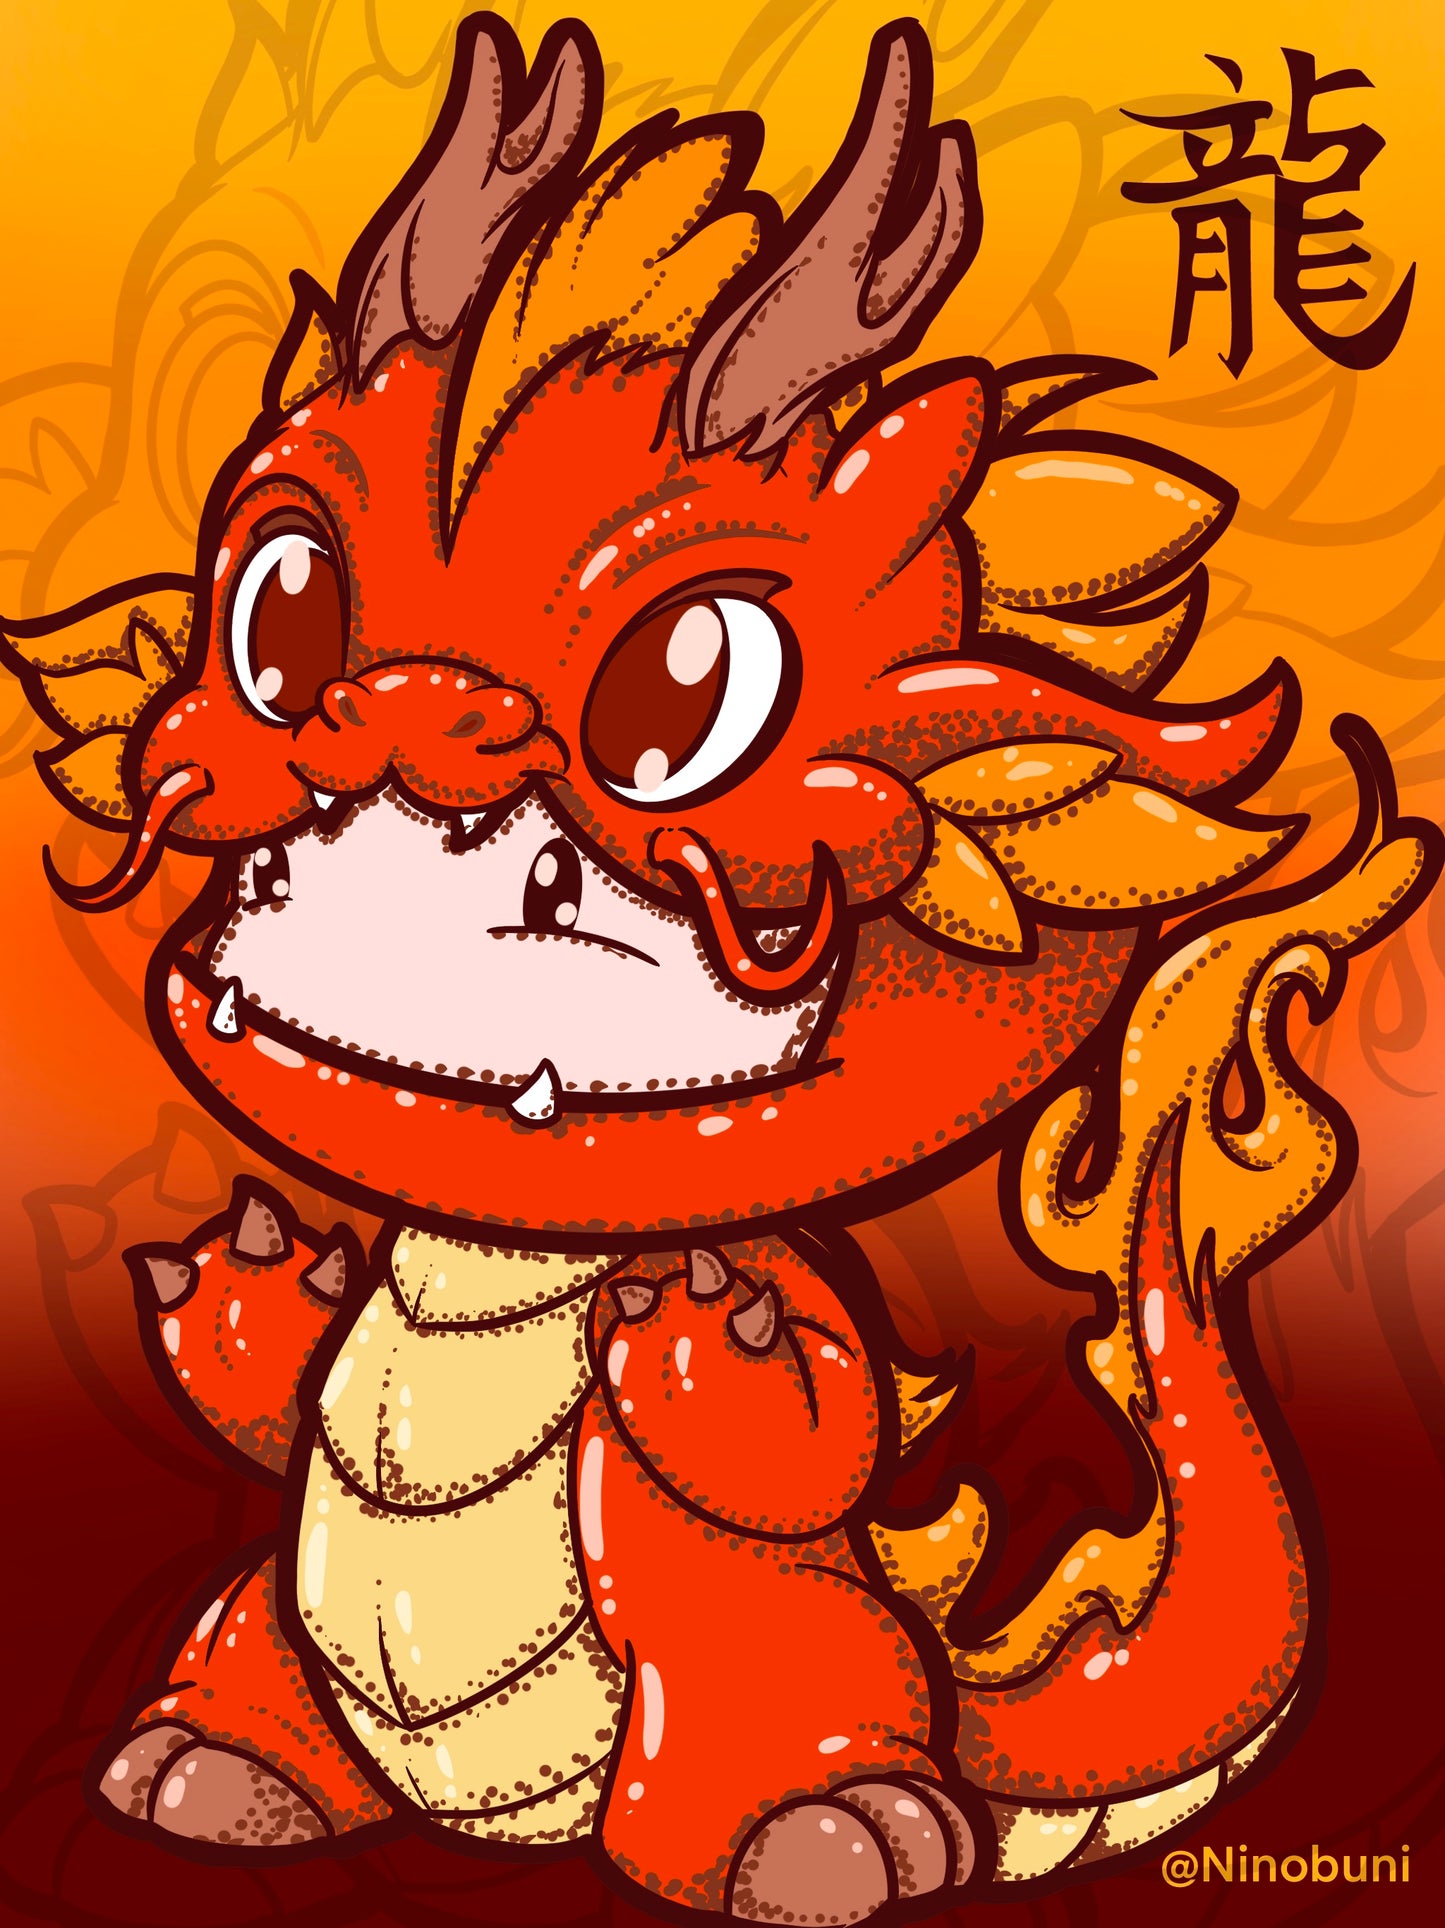 Lunar year of the Dragon (sticker set)